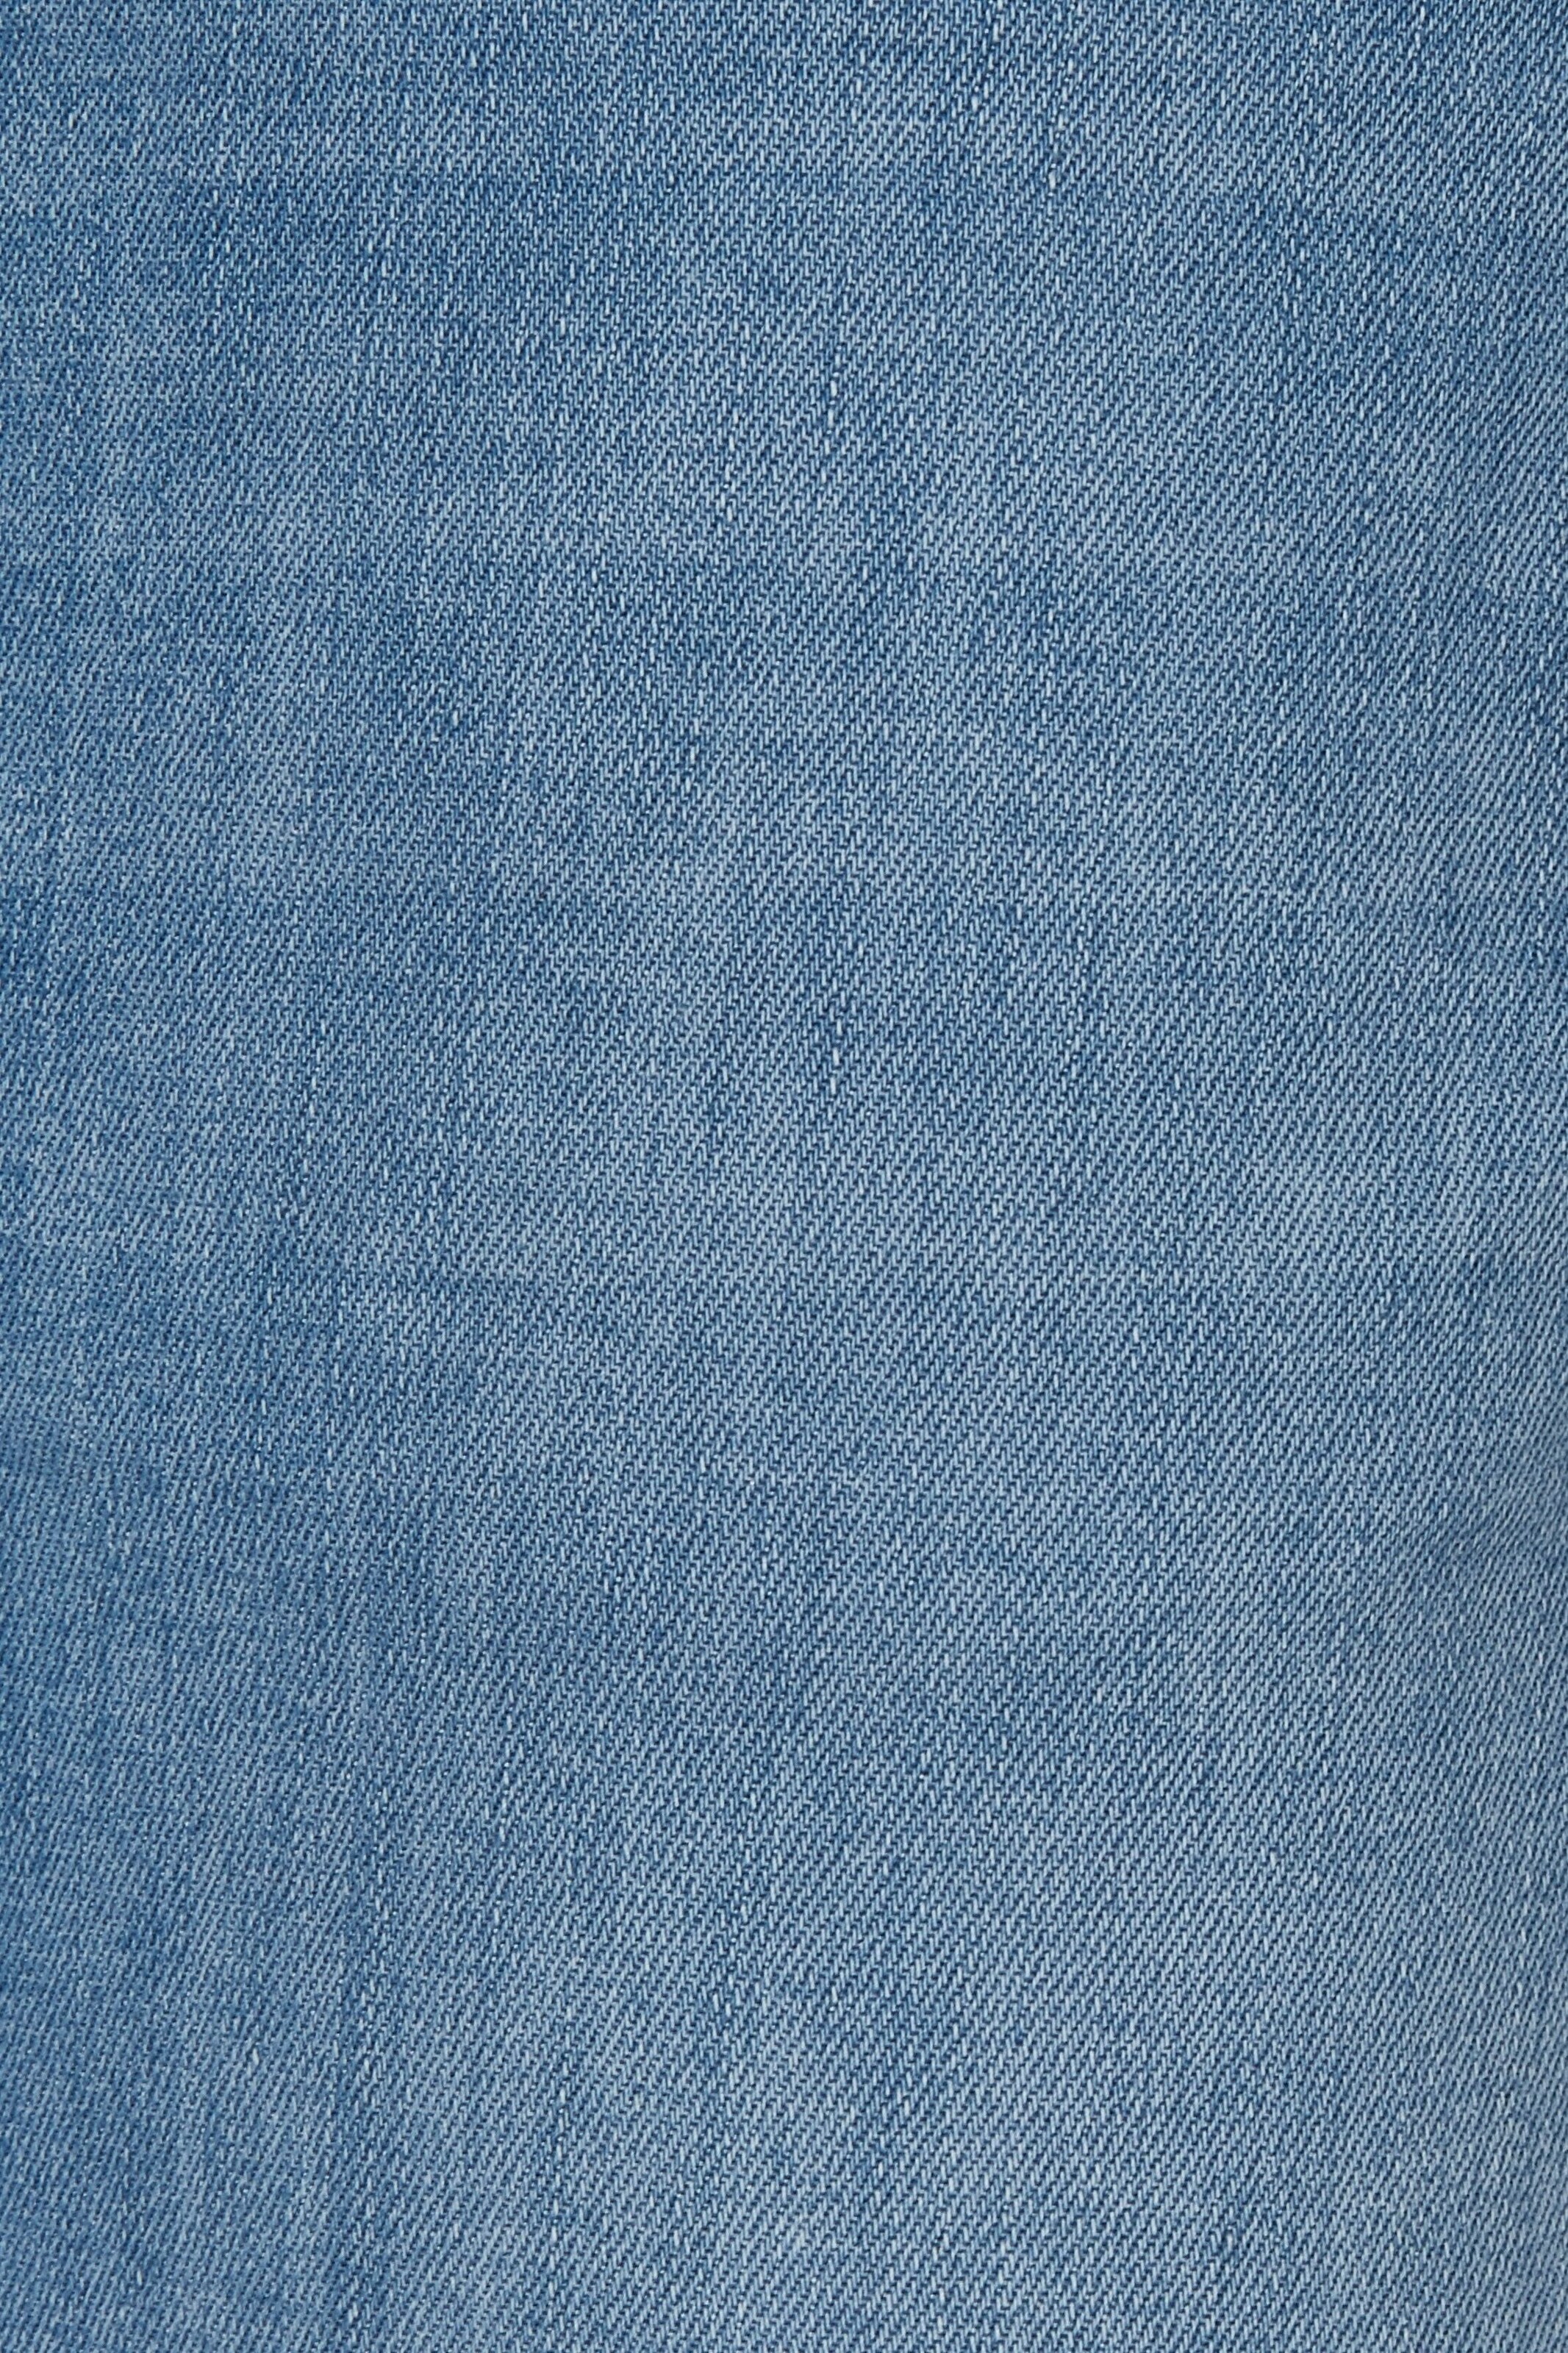 Angels Capri-Jeans Fringe in Blau 